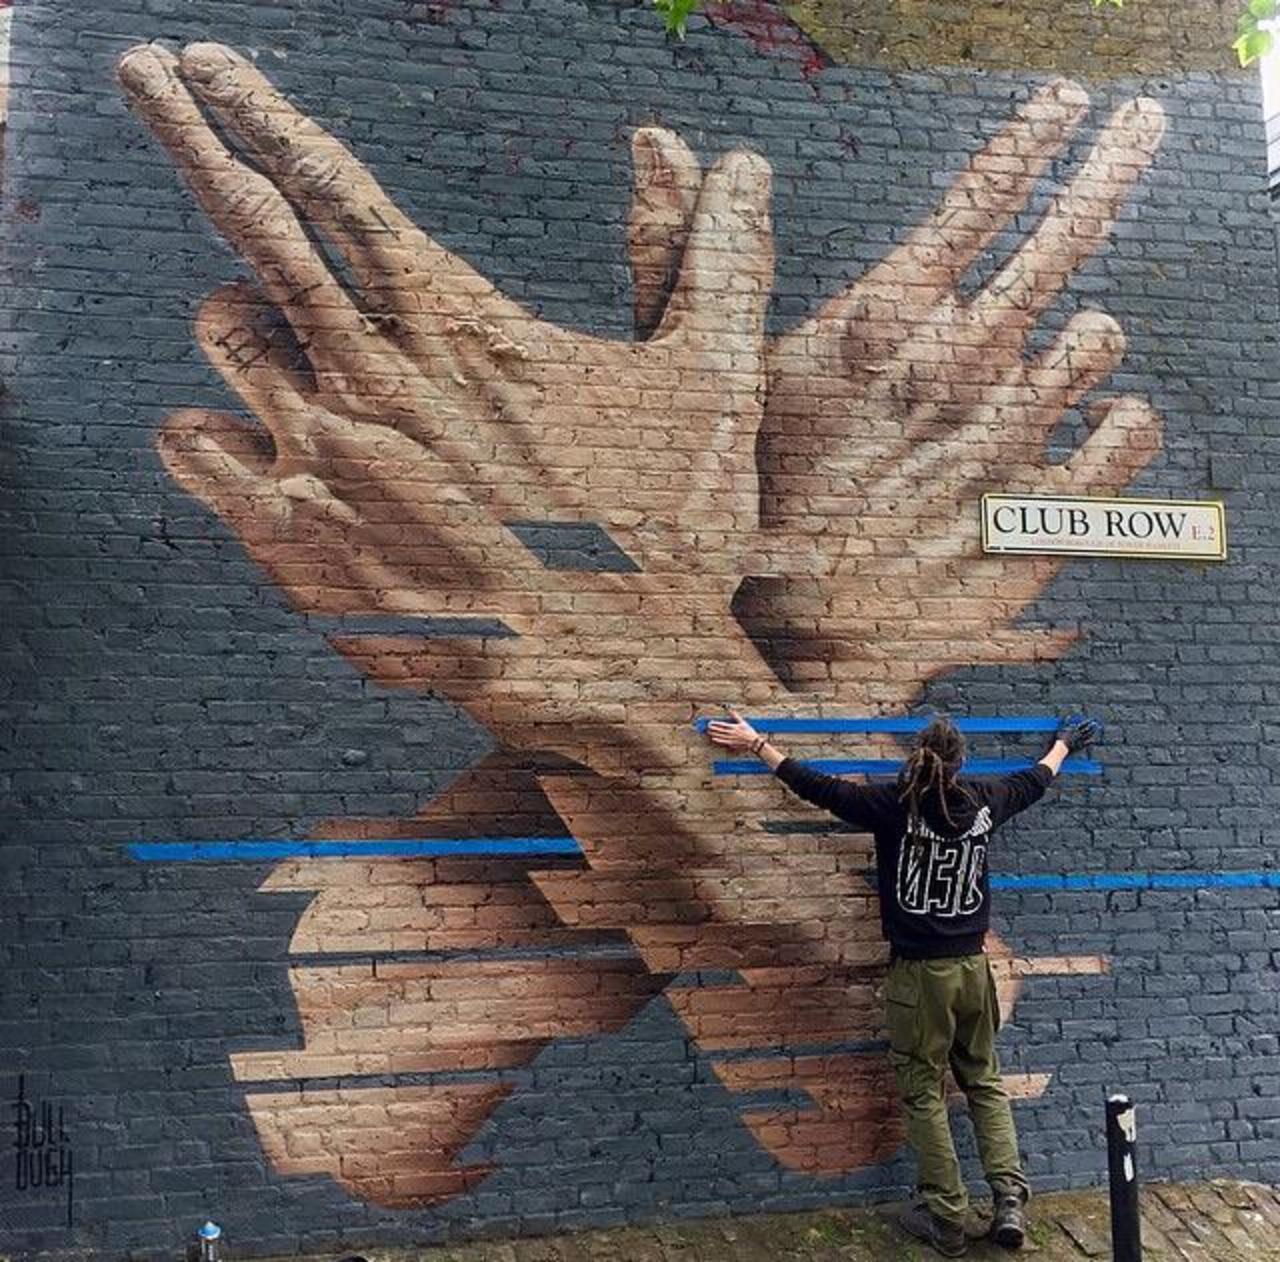 New Street Art by James Bullough, in Shoreditch, London 

#art #arte #graffiti #streetart http://t.co/4CgSFEt1JZ